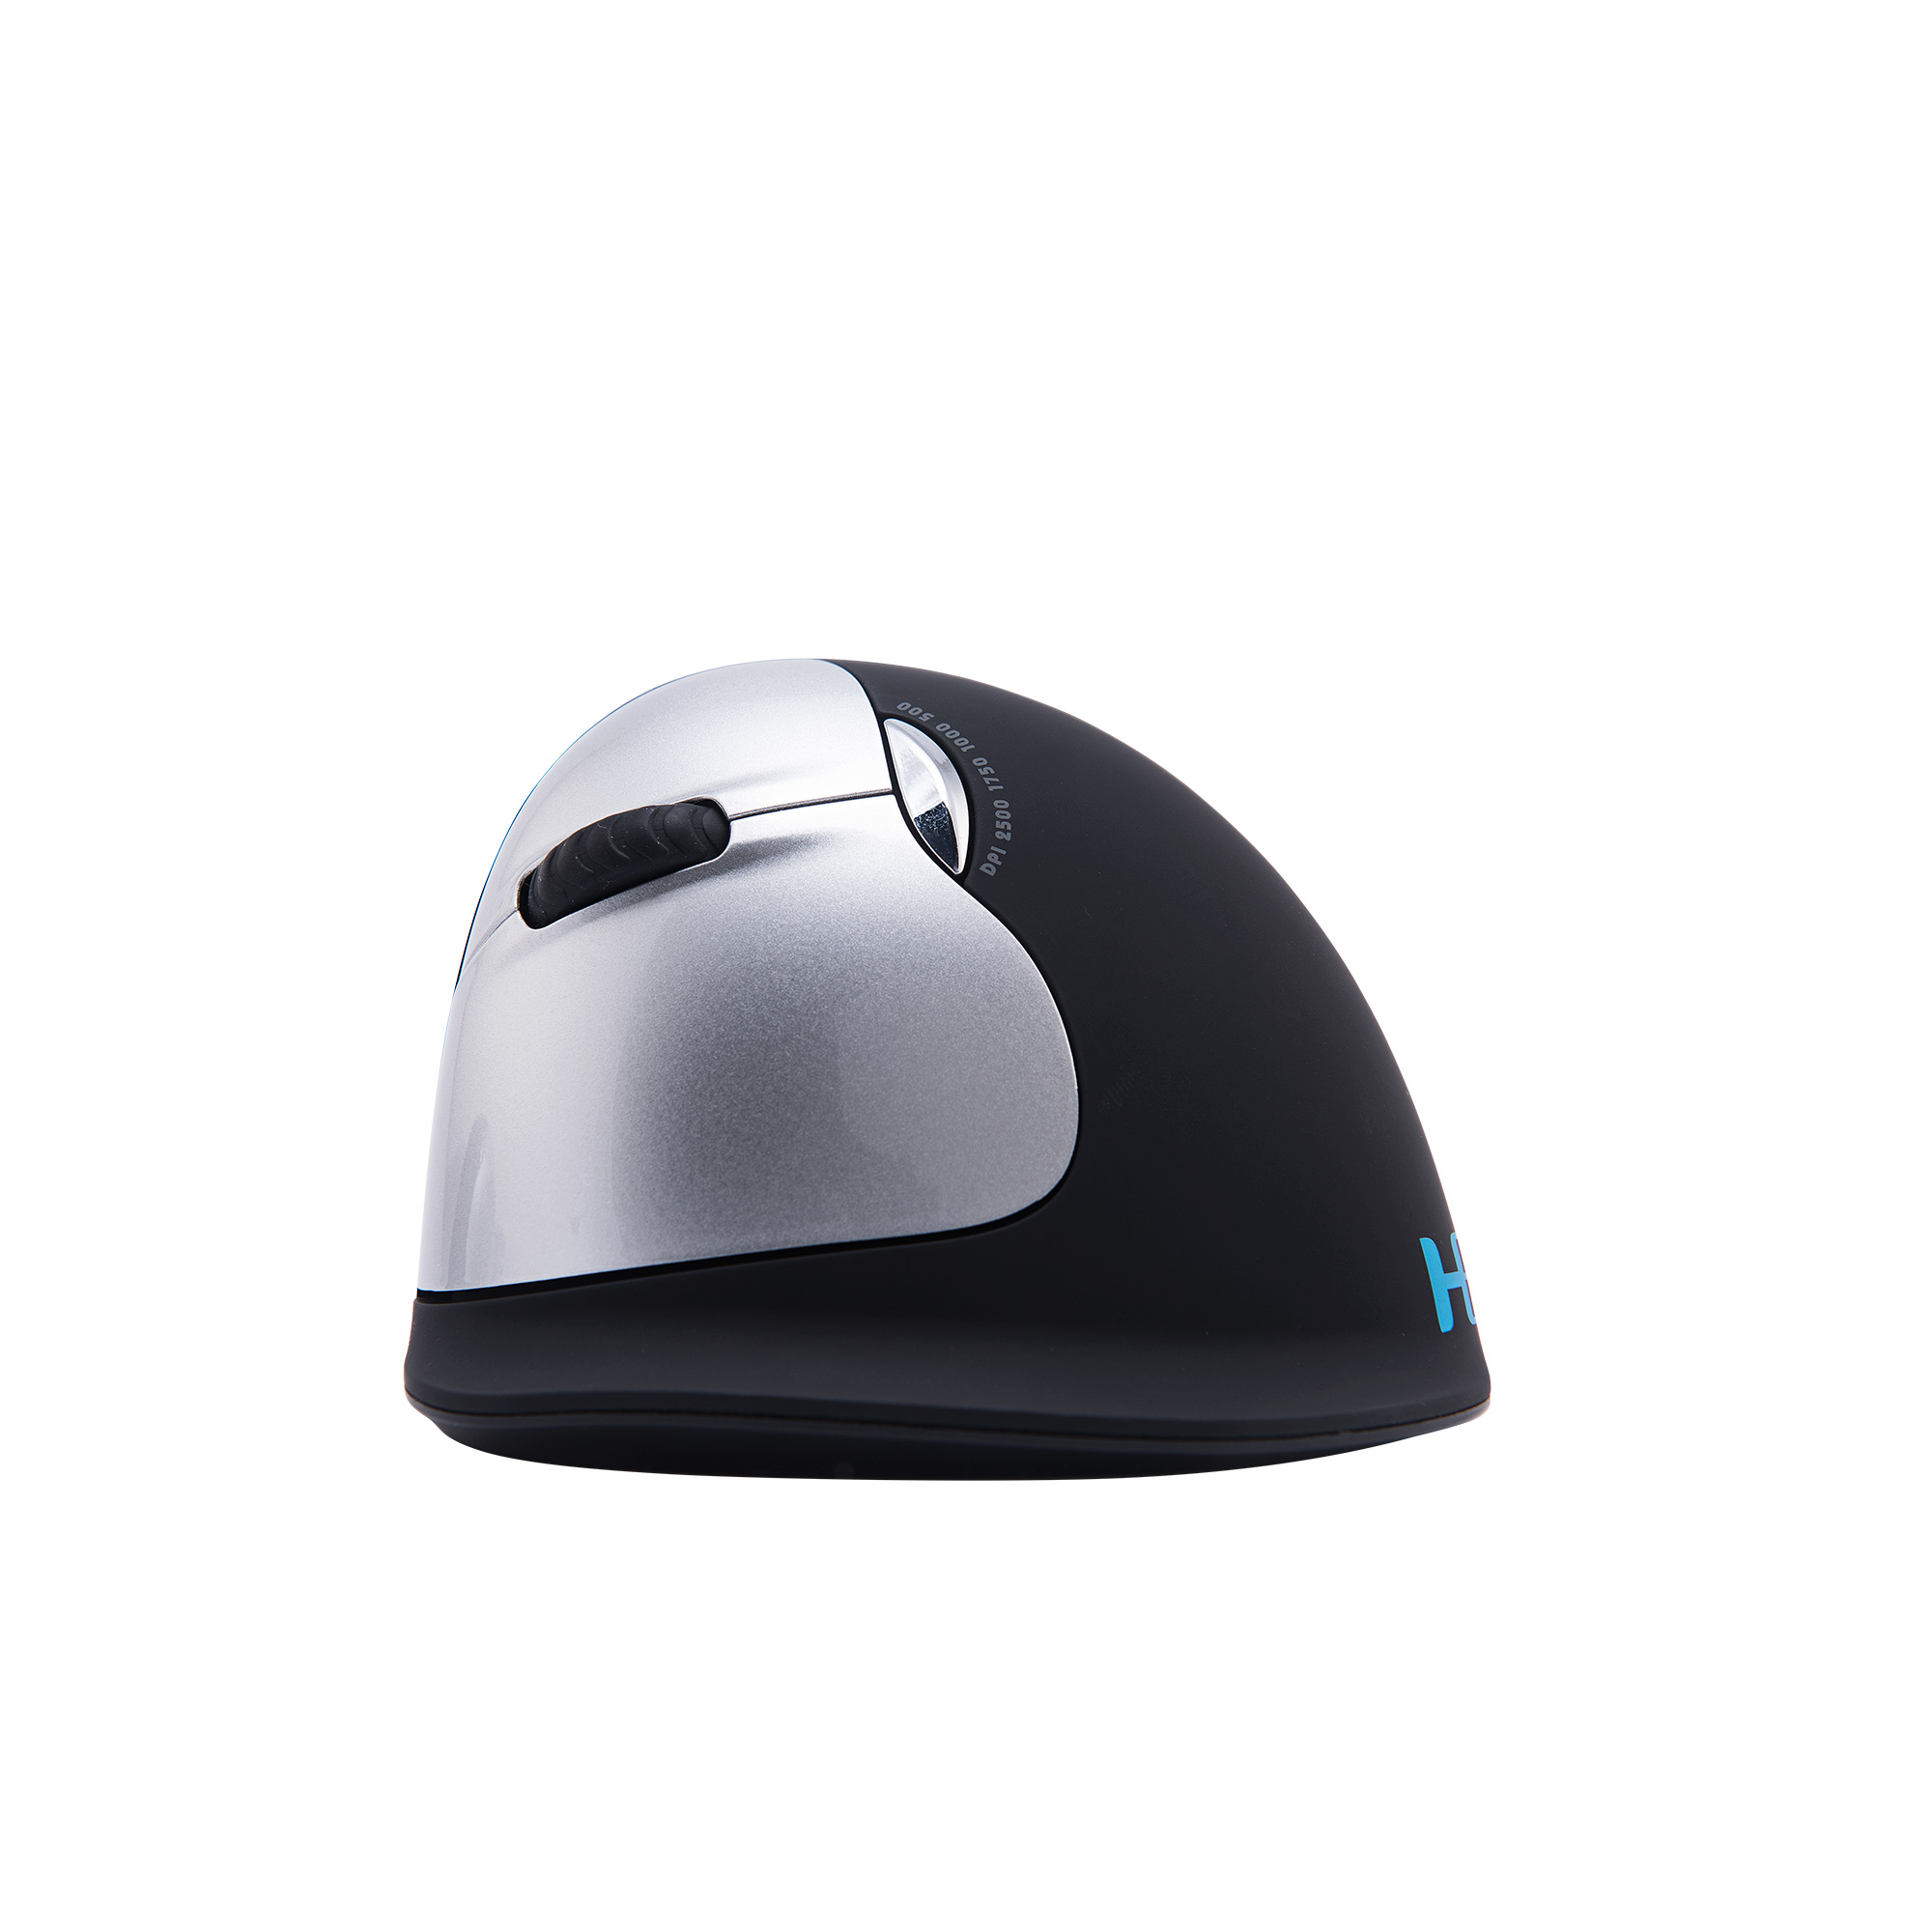 R-Go HE Mouse - Maus - ergonomisch - Für Linkshänder - 5 Tasten - kabellos - 2.4 GHz - kabelloser Empfänger (USB)